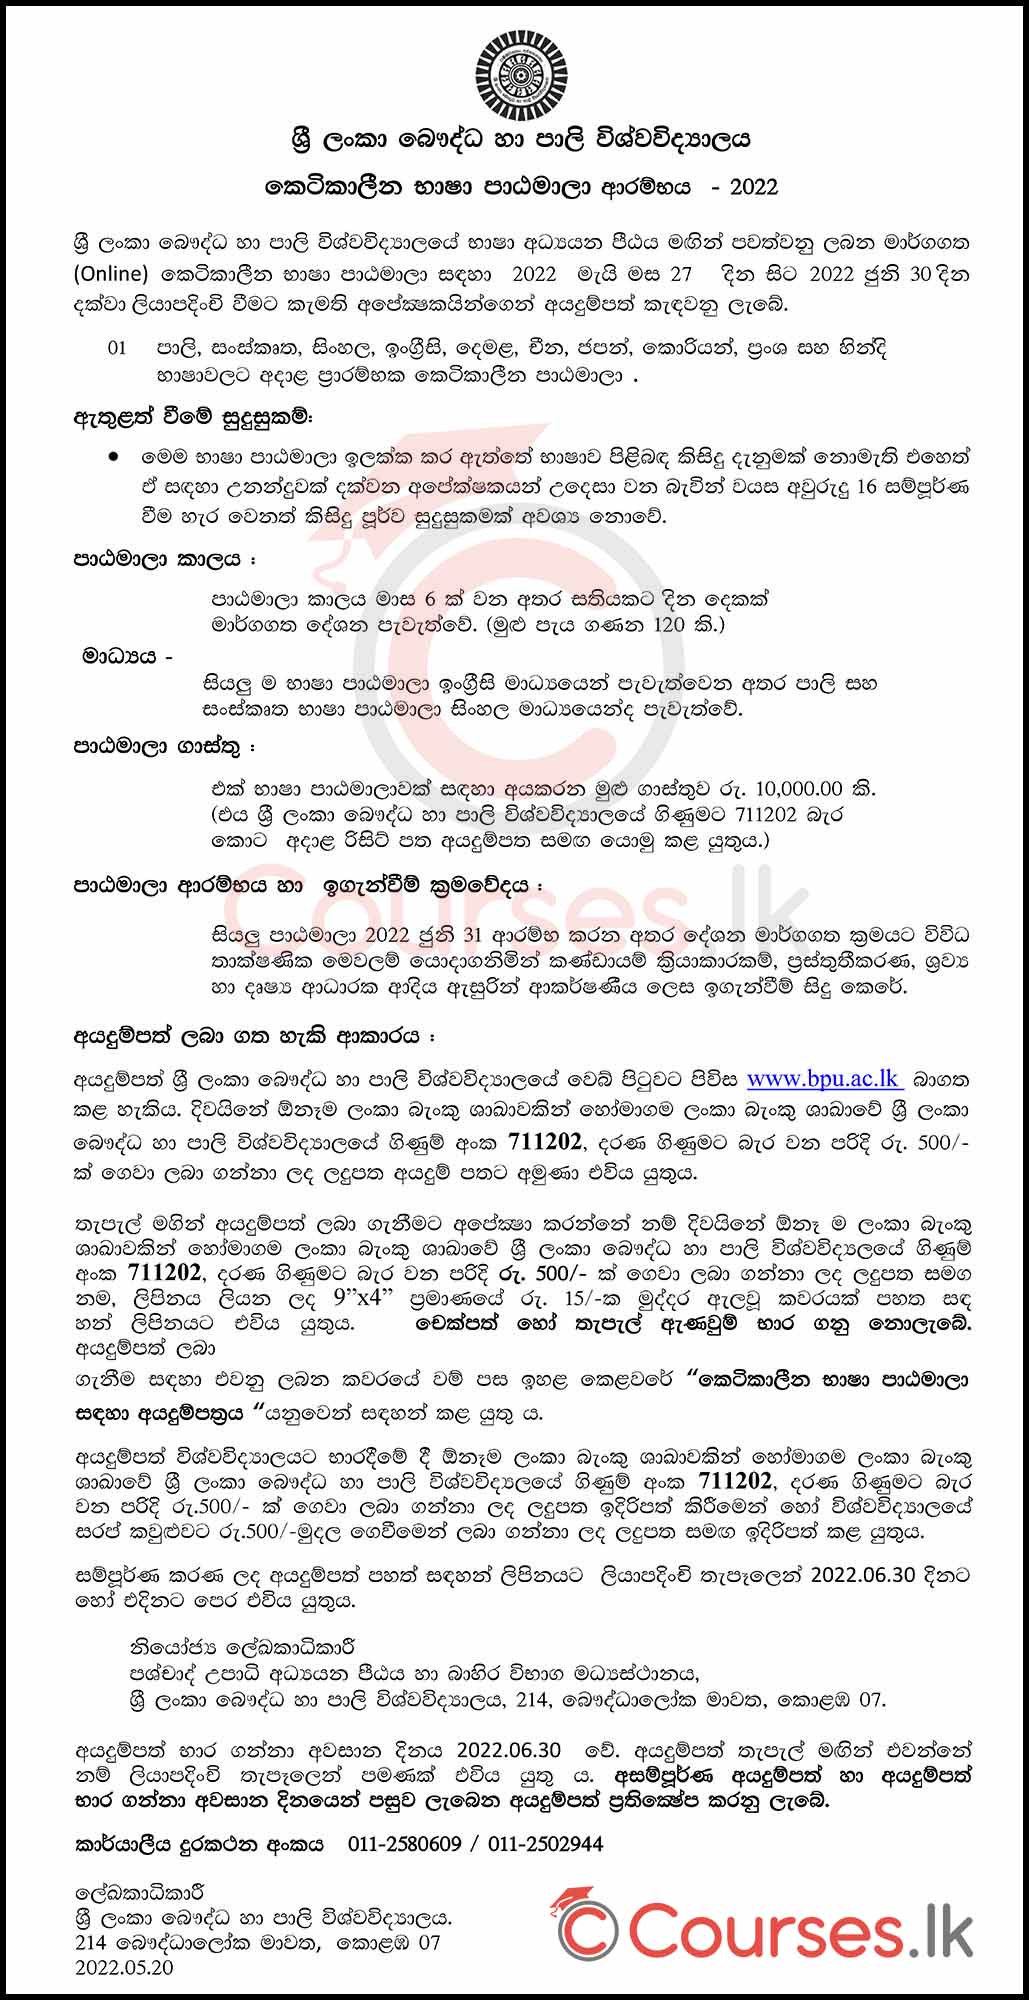 Online Short Courses on Languages 2022 - Buddhist and Pali University of Sri Lanka